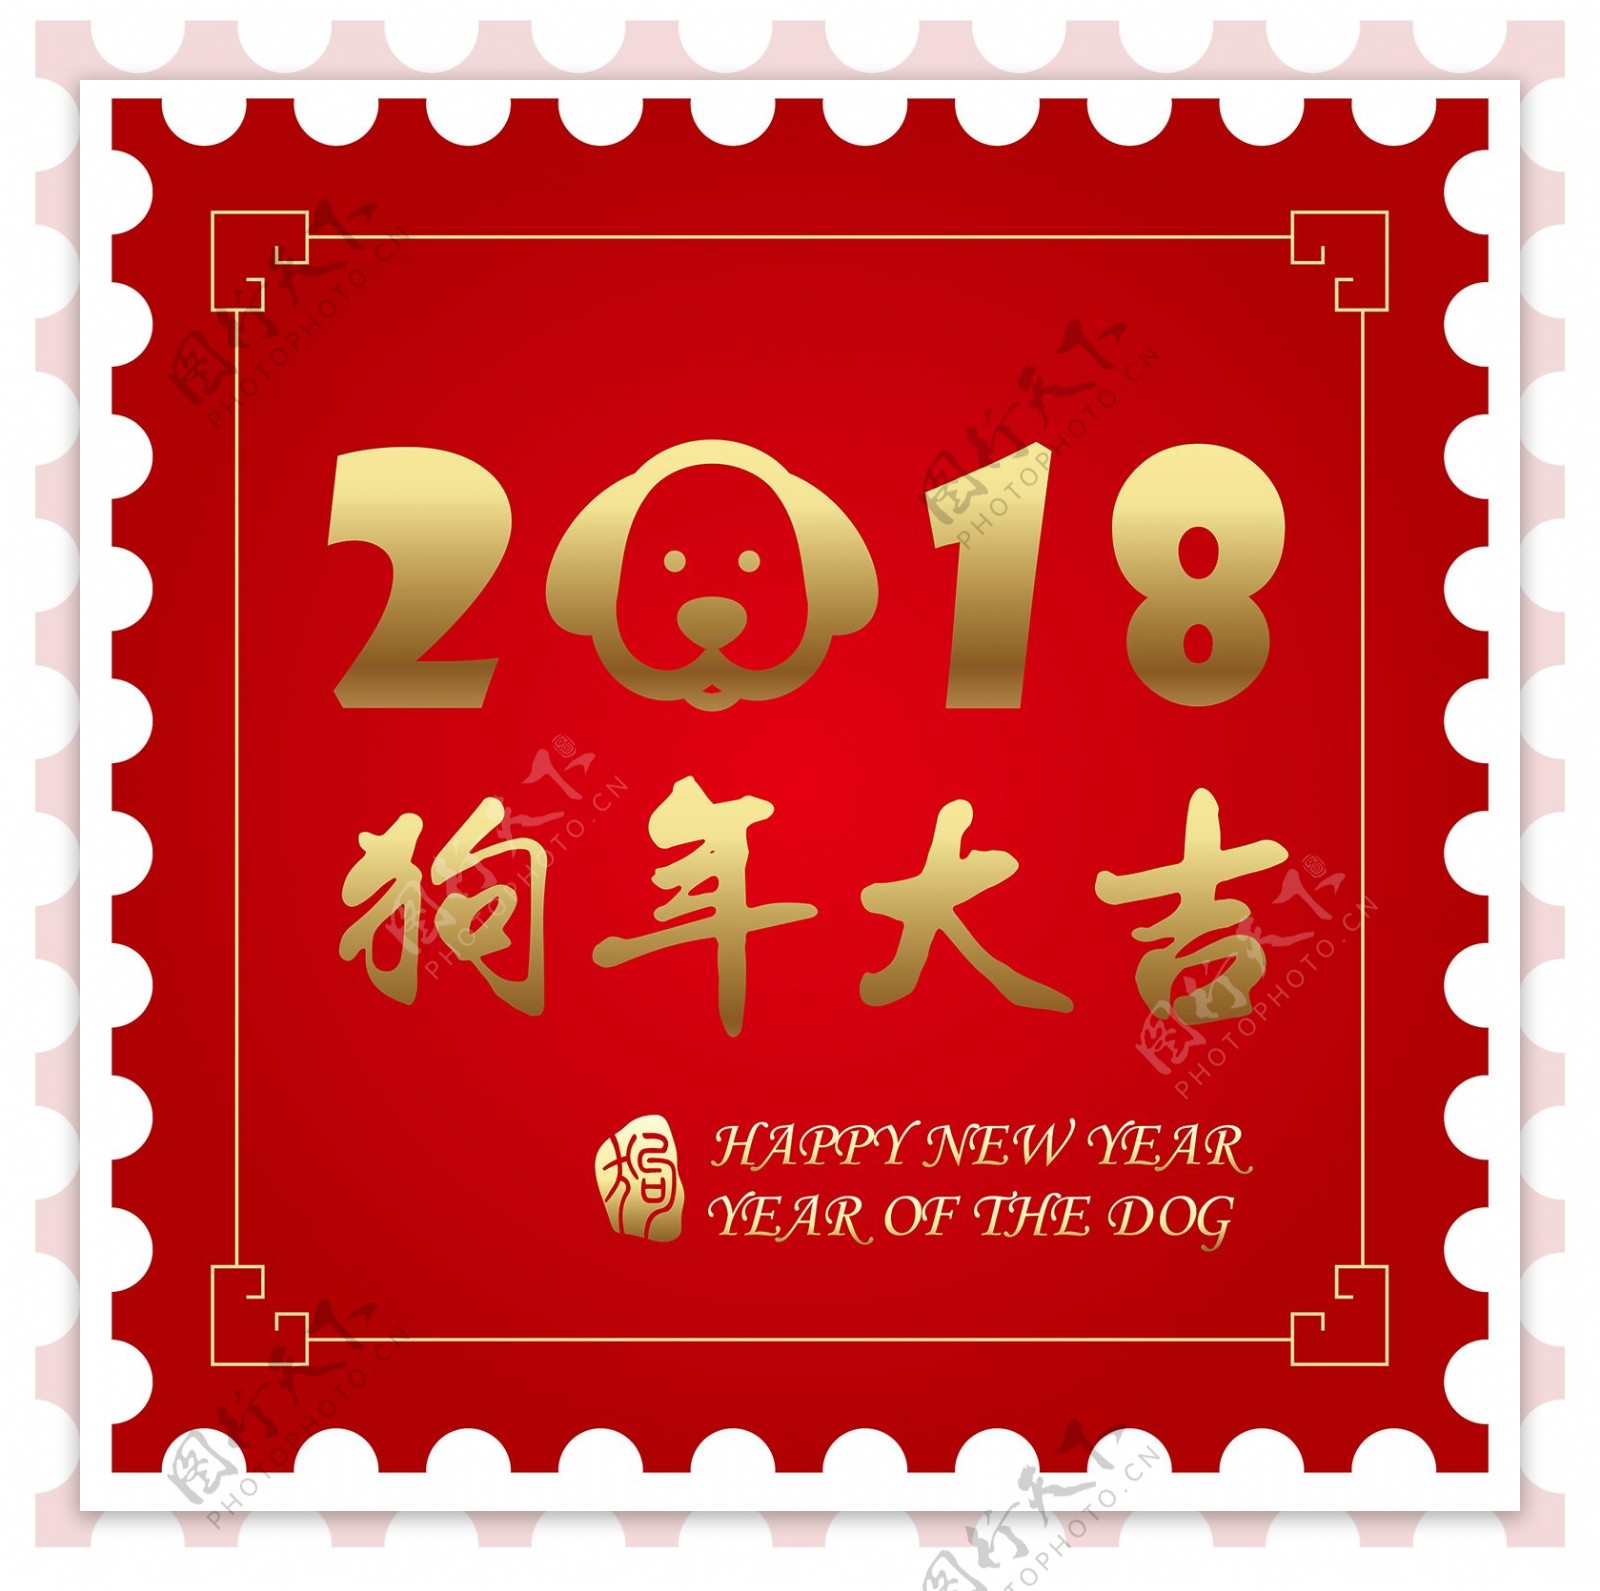 红色邮票式2018狗年大吉字体元素